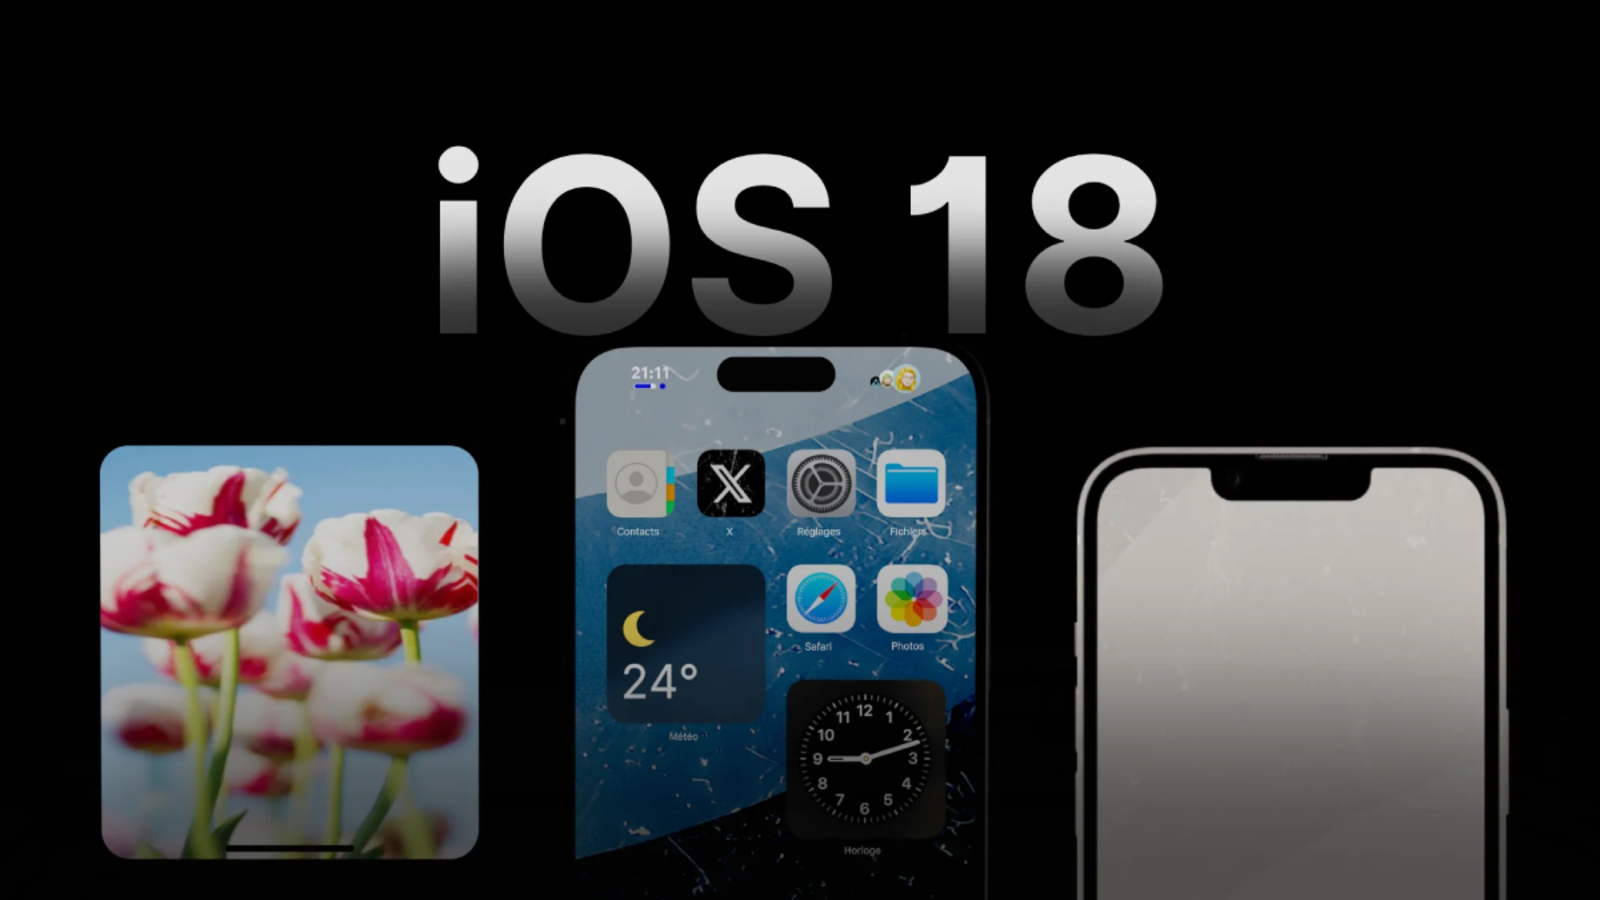 iOS 18, yeni güncellemelerle beraber genişletilmiş özellikler ve yenilenmiş uygulamalar barındıracak!